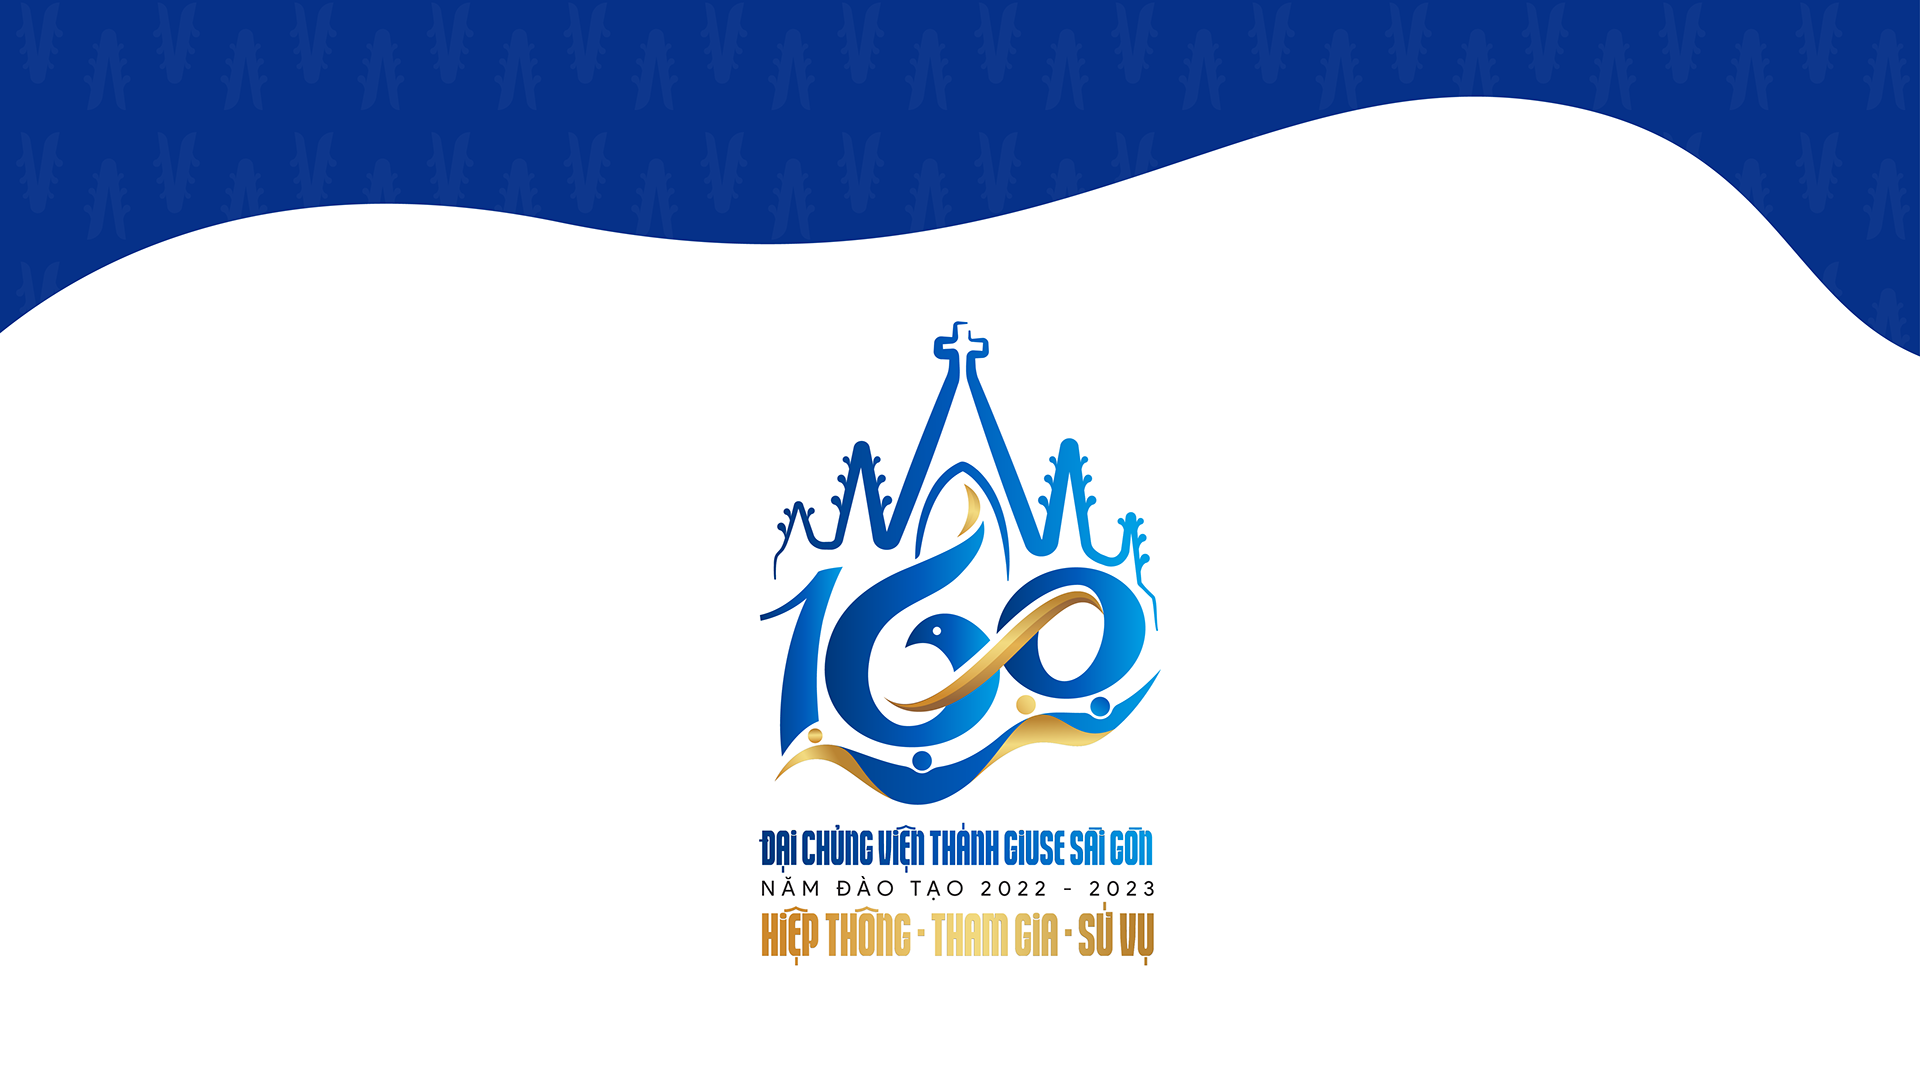 Logo mừng kỉ niệm 160 năm Đại chủng viện Thánh Giuse Sài Gòn 03